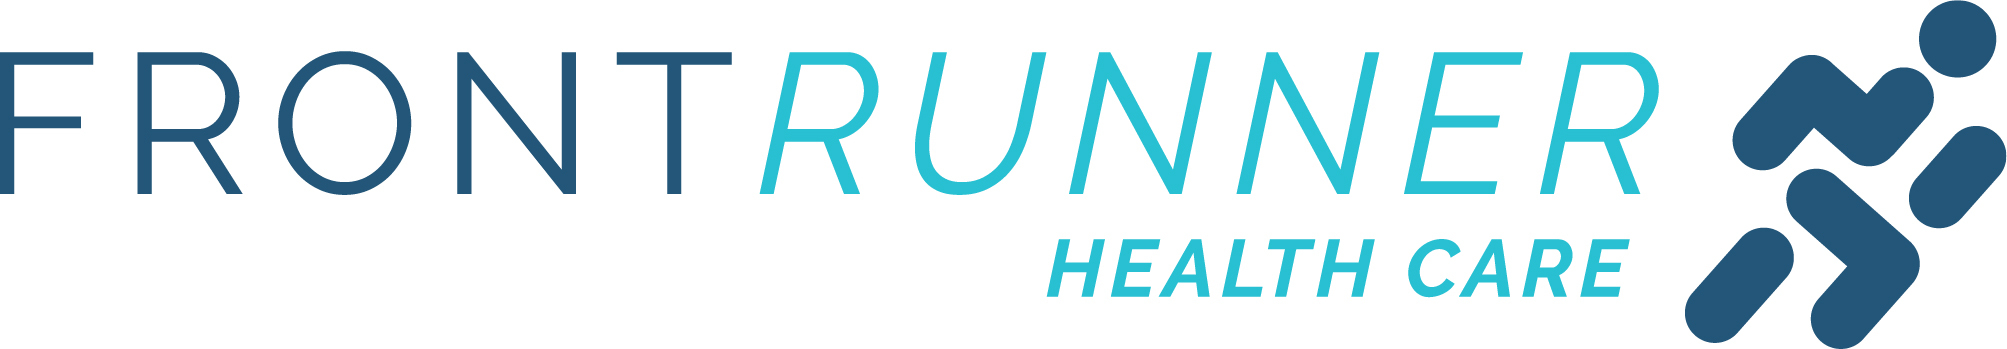 The FrontRunner Health Care logo